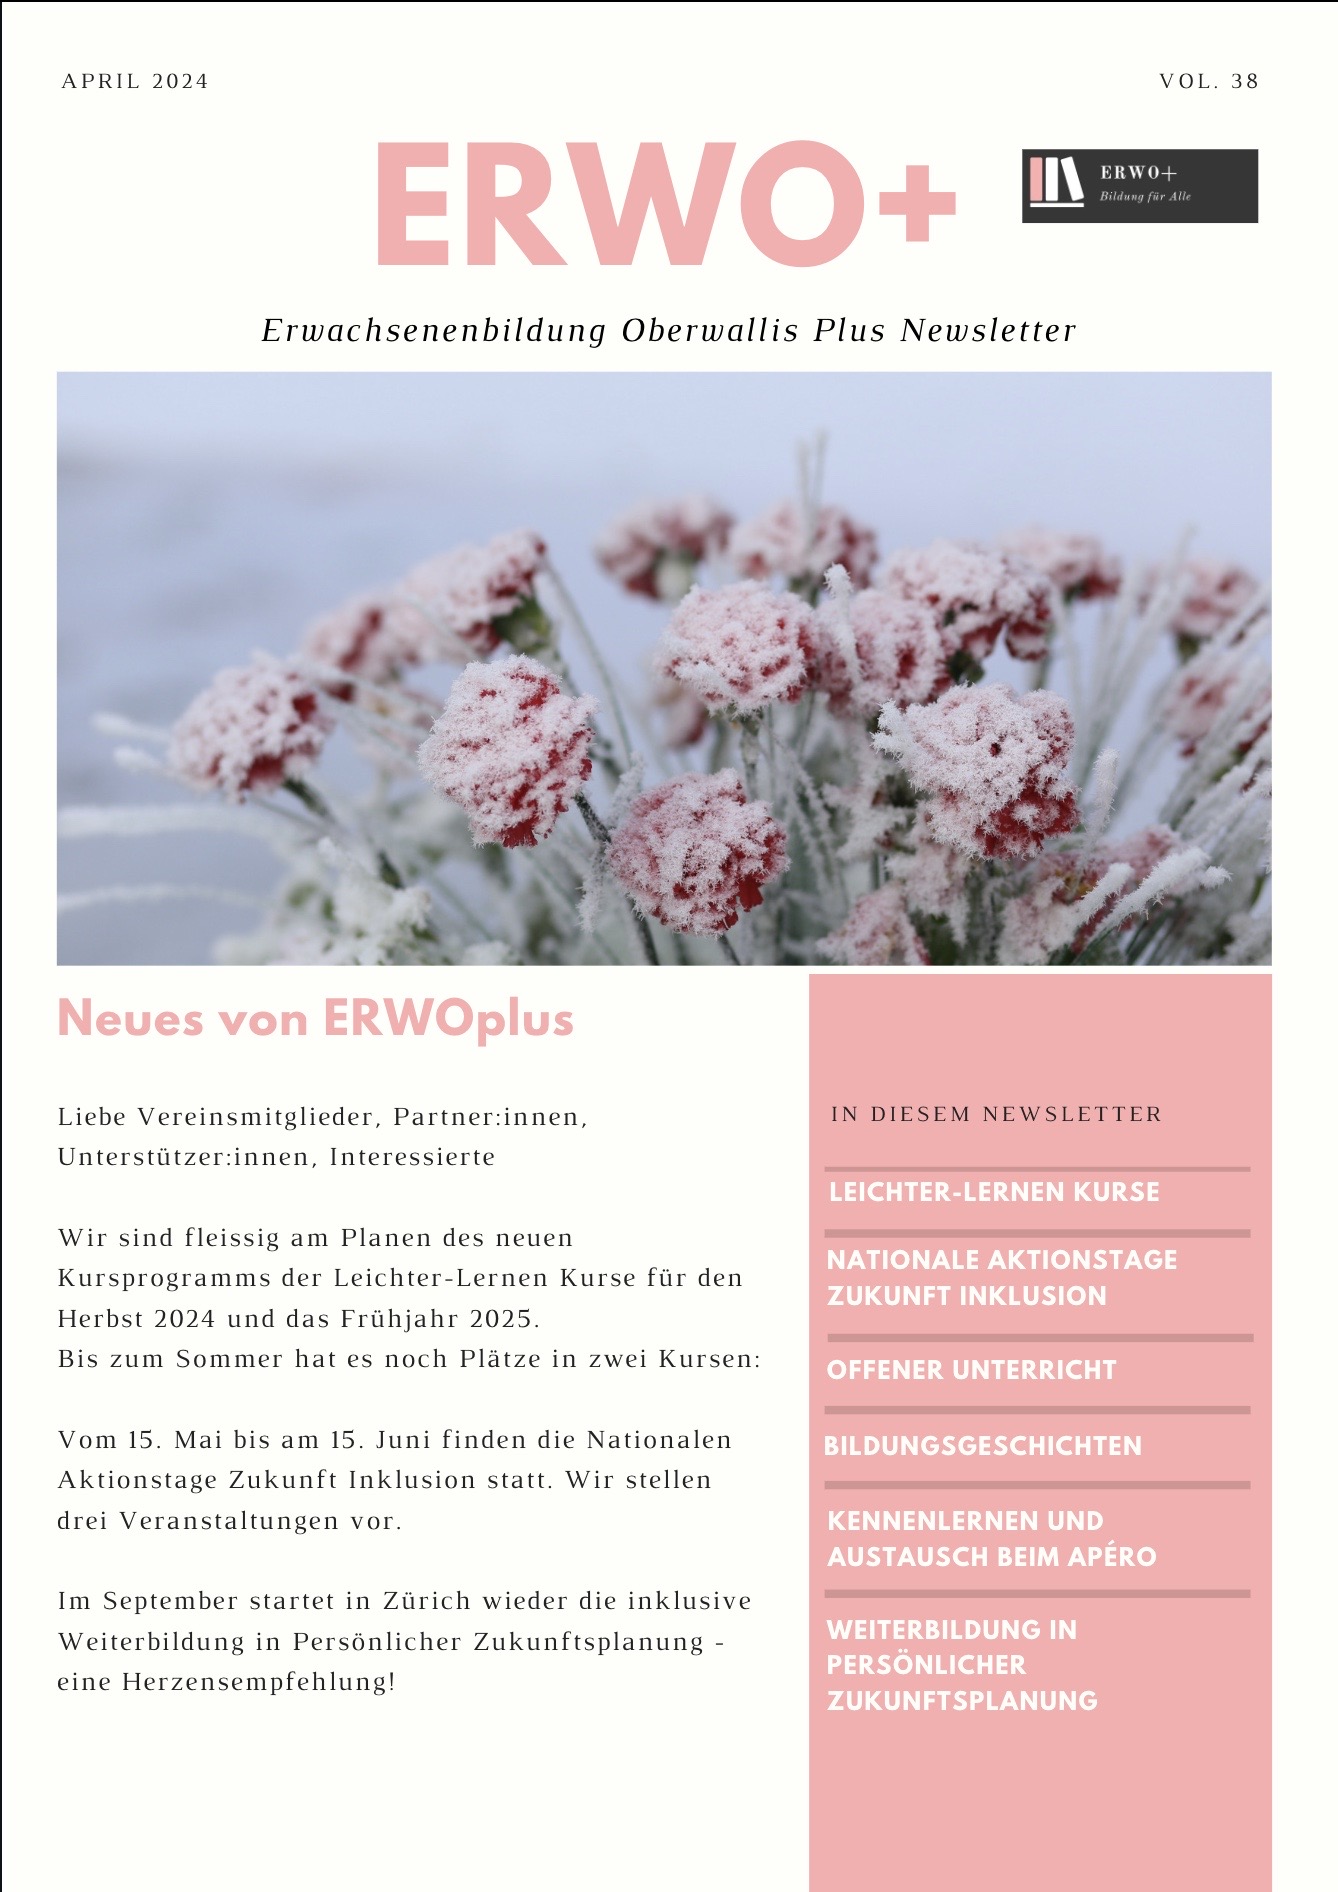 Coverbild Newsletter April 24. Auf dem Coverbild sind schneebedeckte Blumen zu sehen und das Editorial. Der Link führt zum PDF des Newsletters.